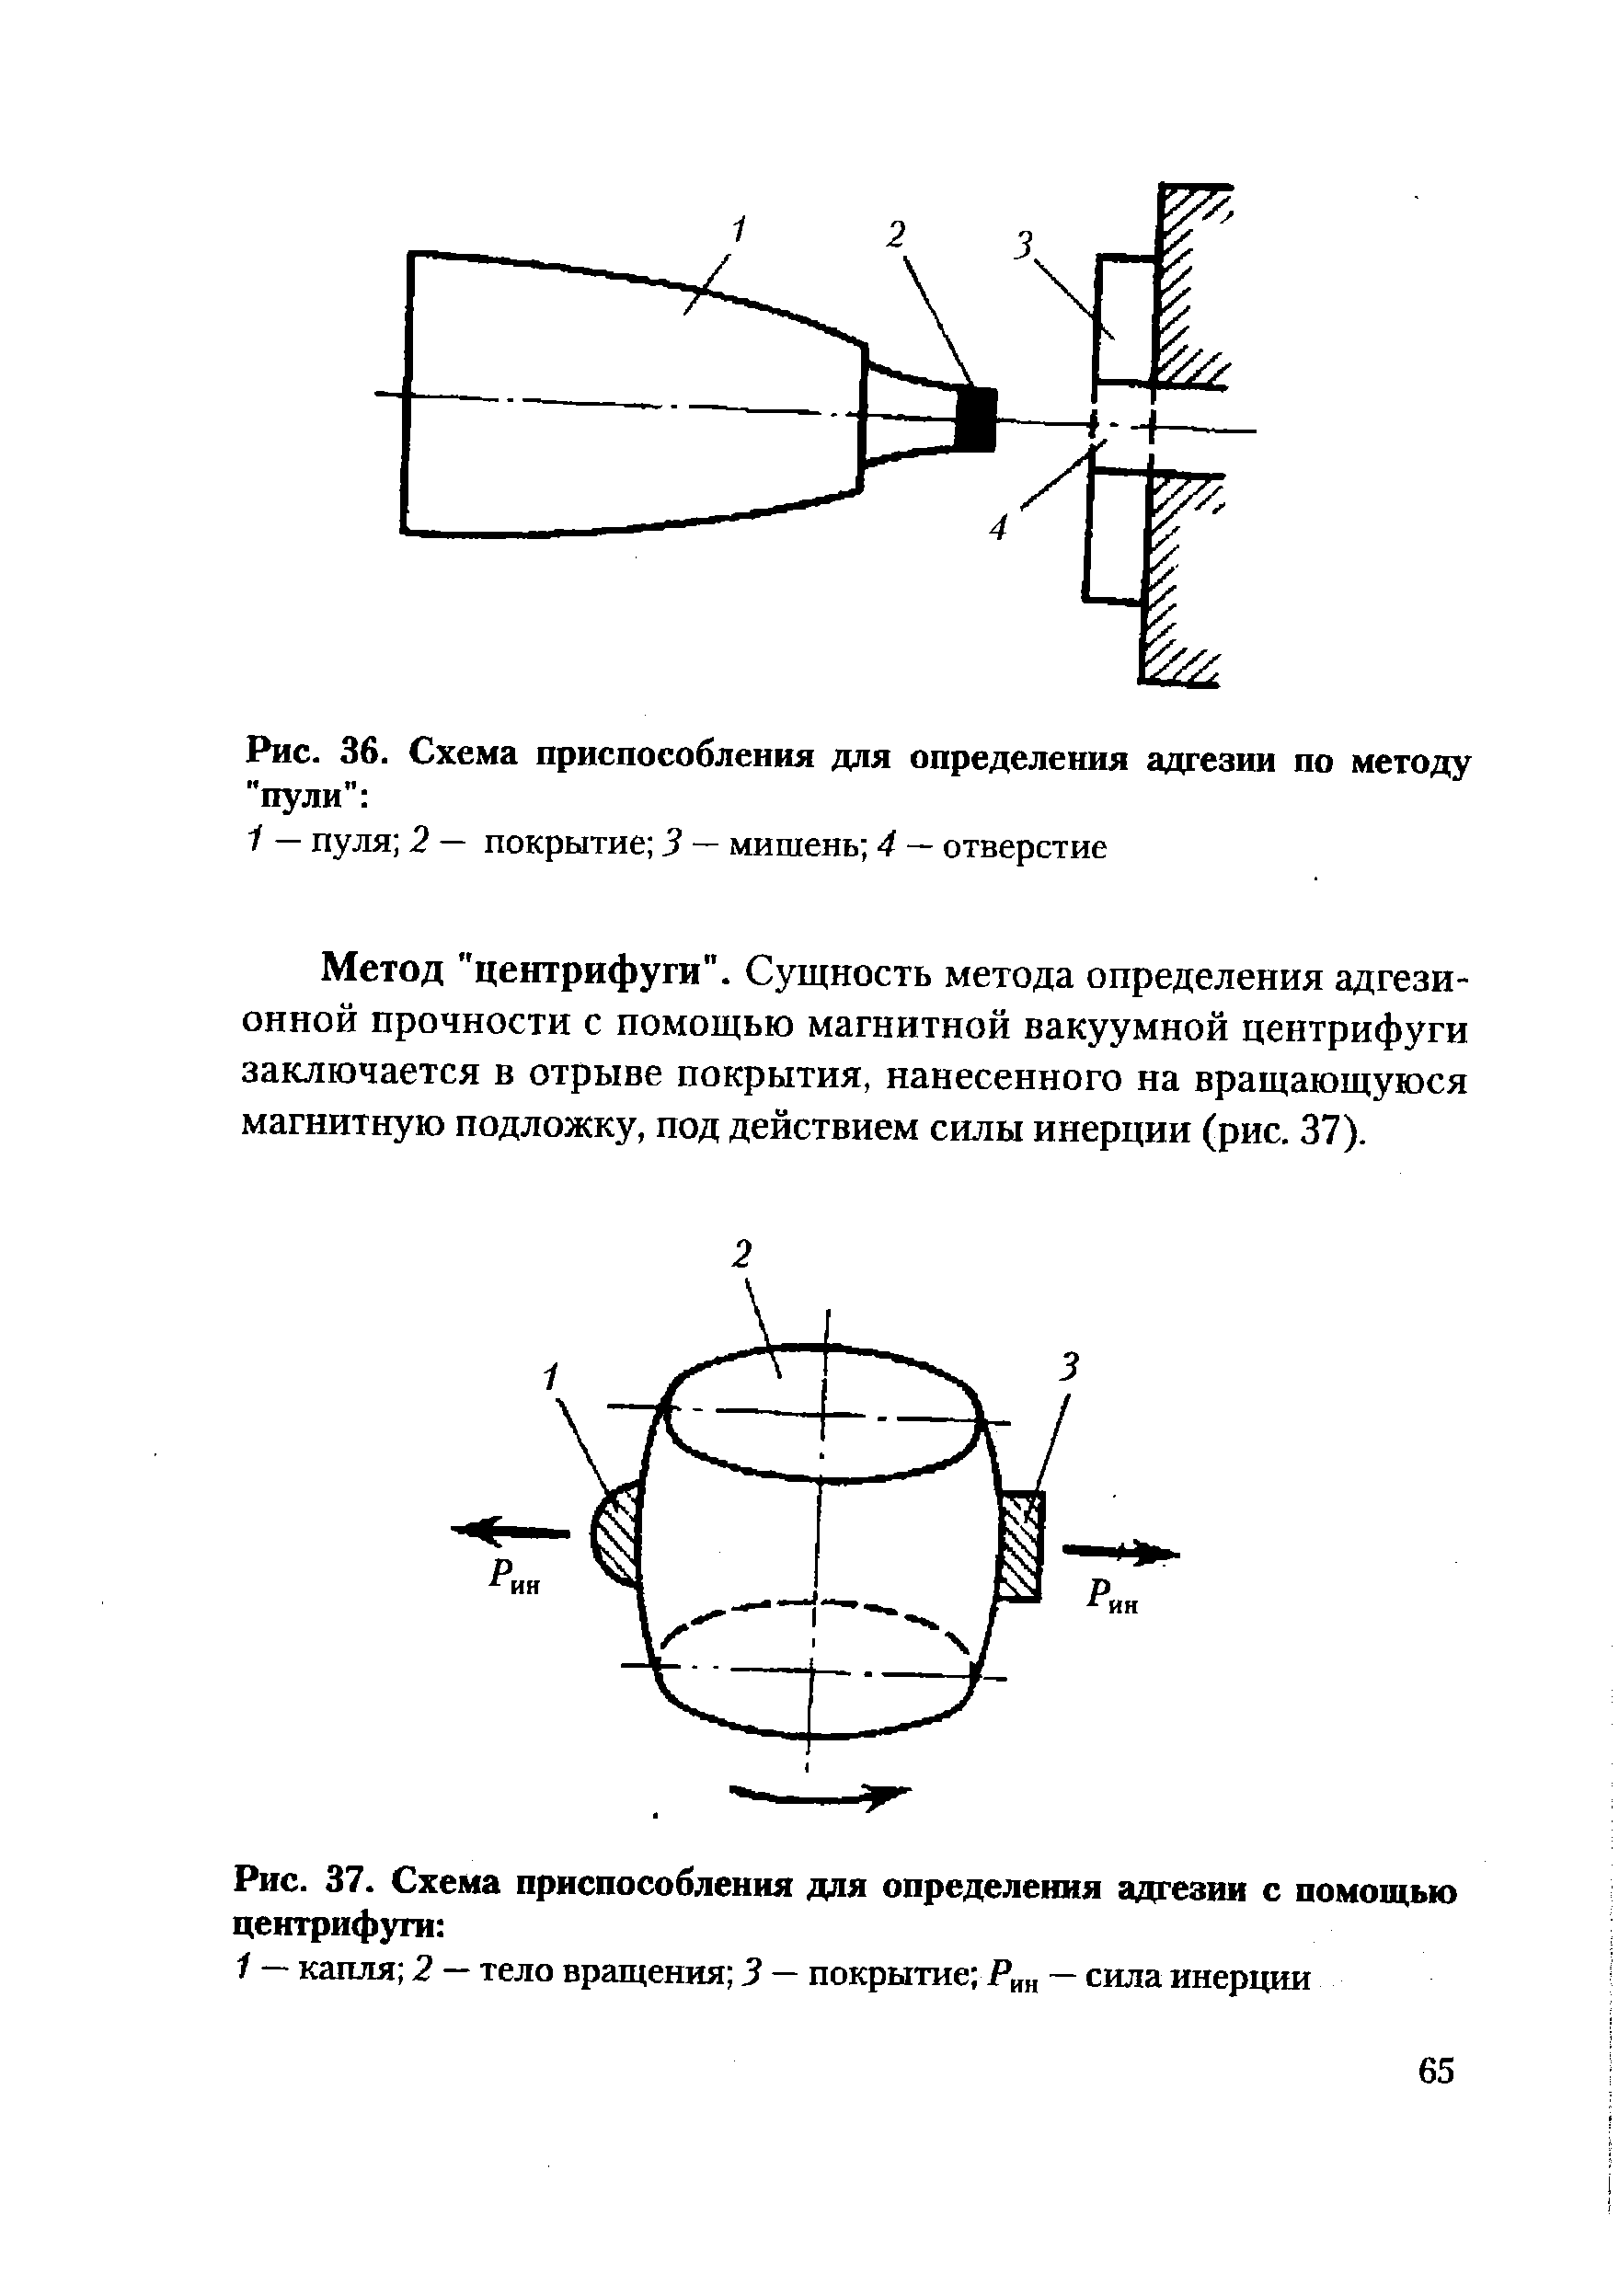 Рис. 37. Схема приспособления для определения адгезии с помощью центрифуги 
